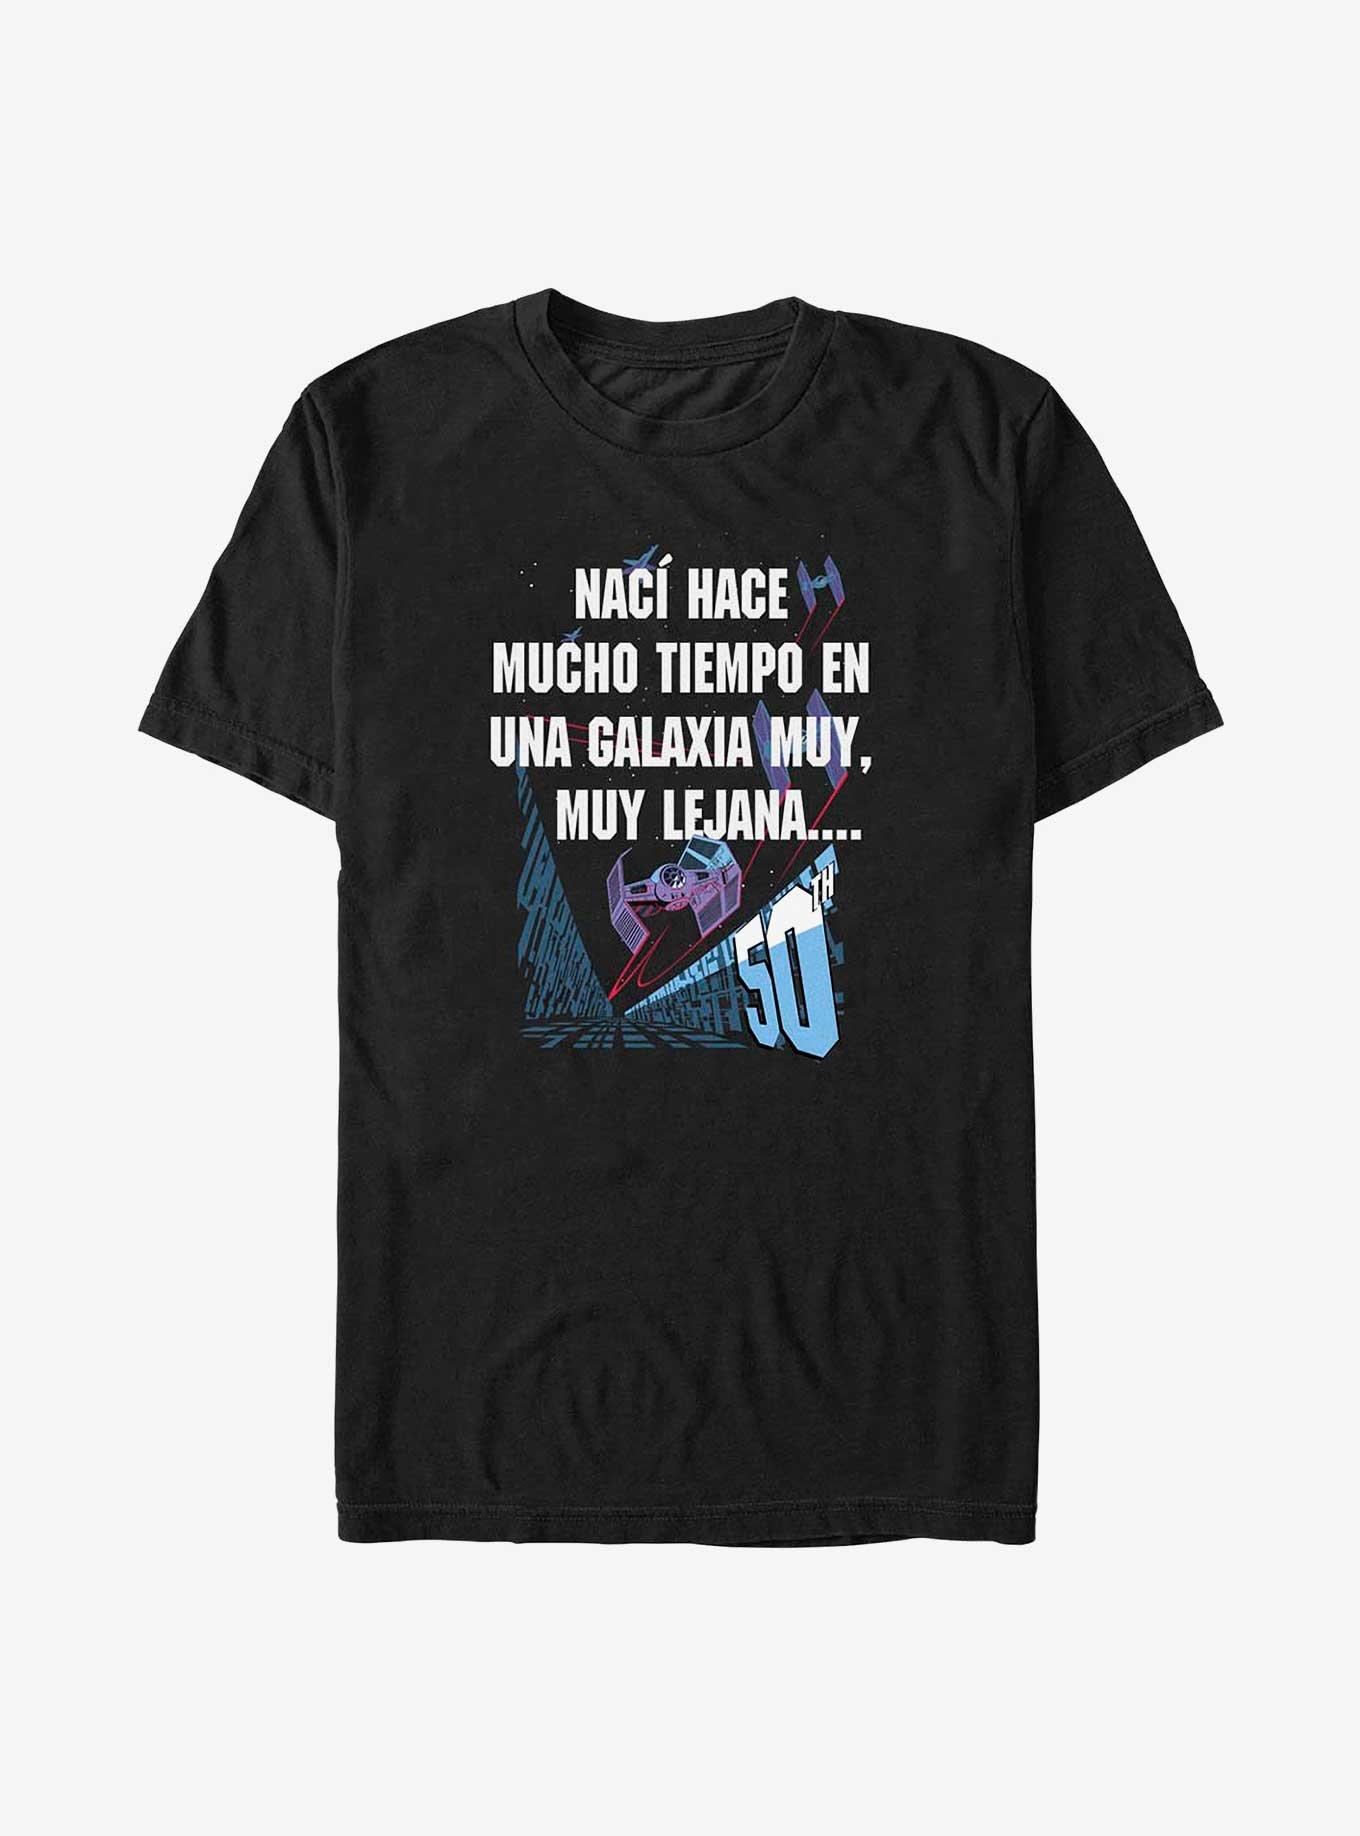 Star Wars Galaxy Far Away Spanish T-Shirt